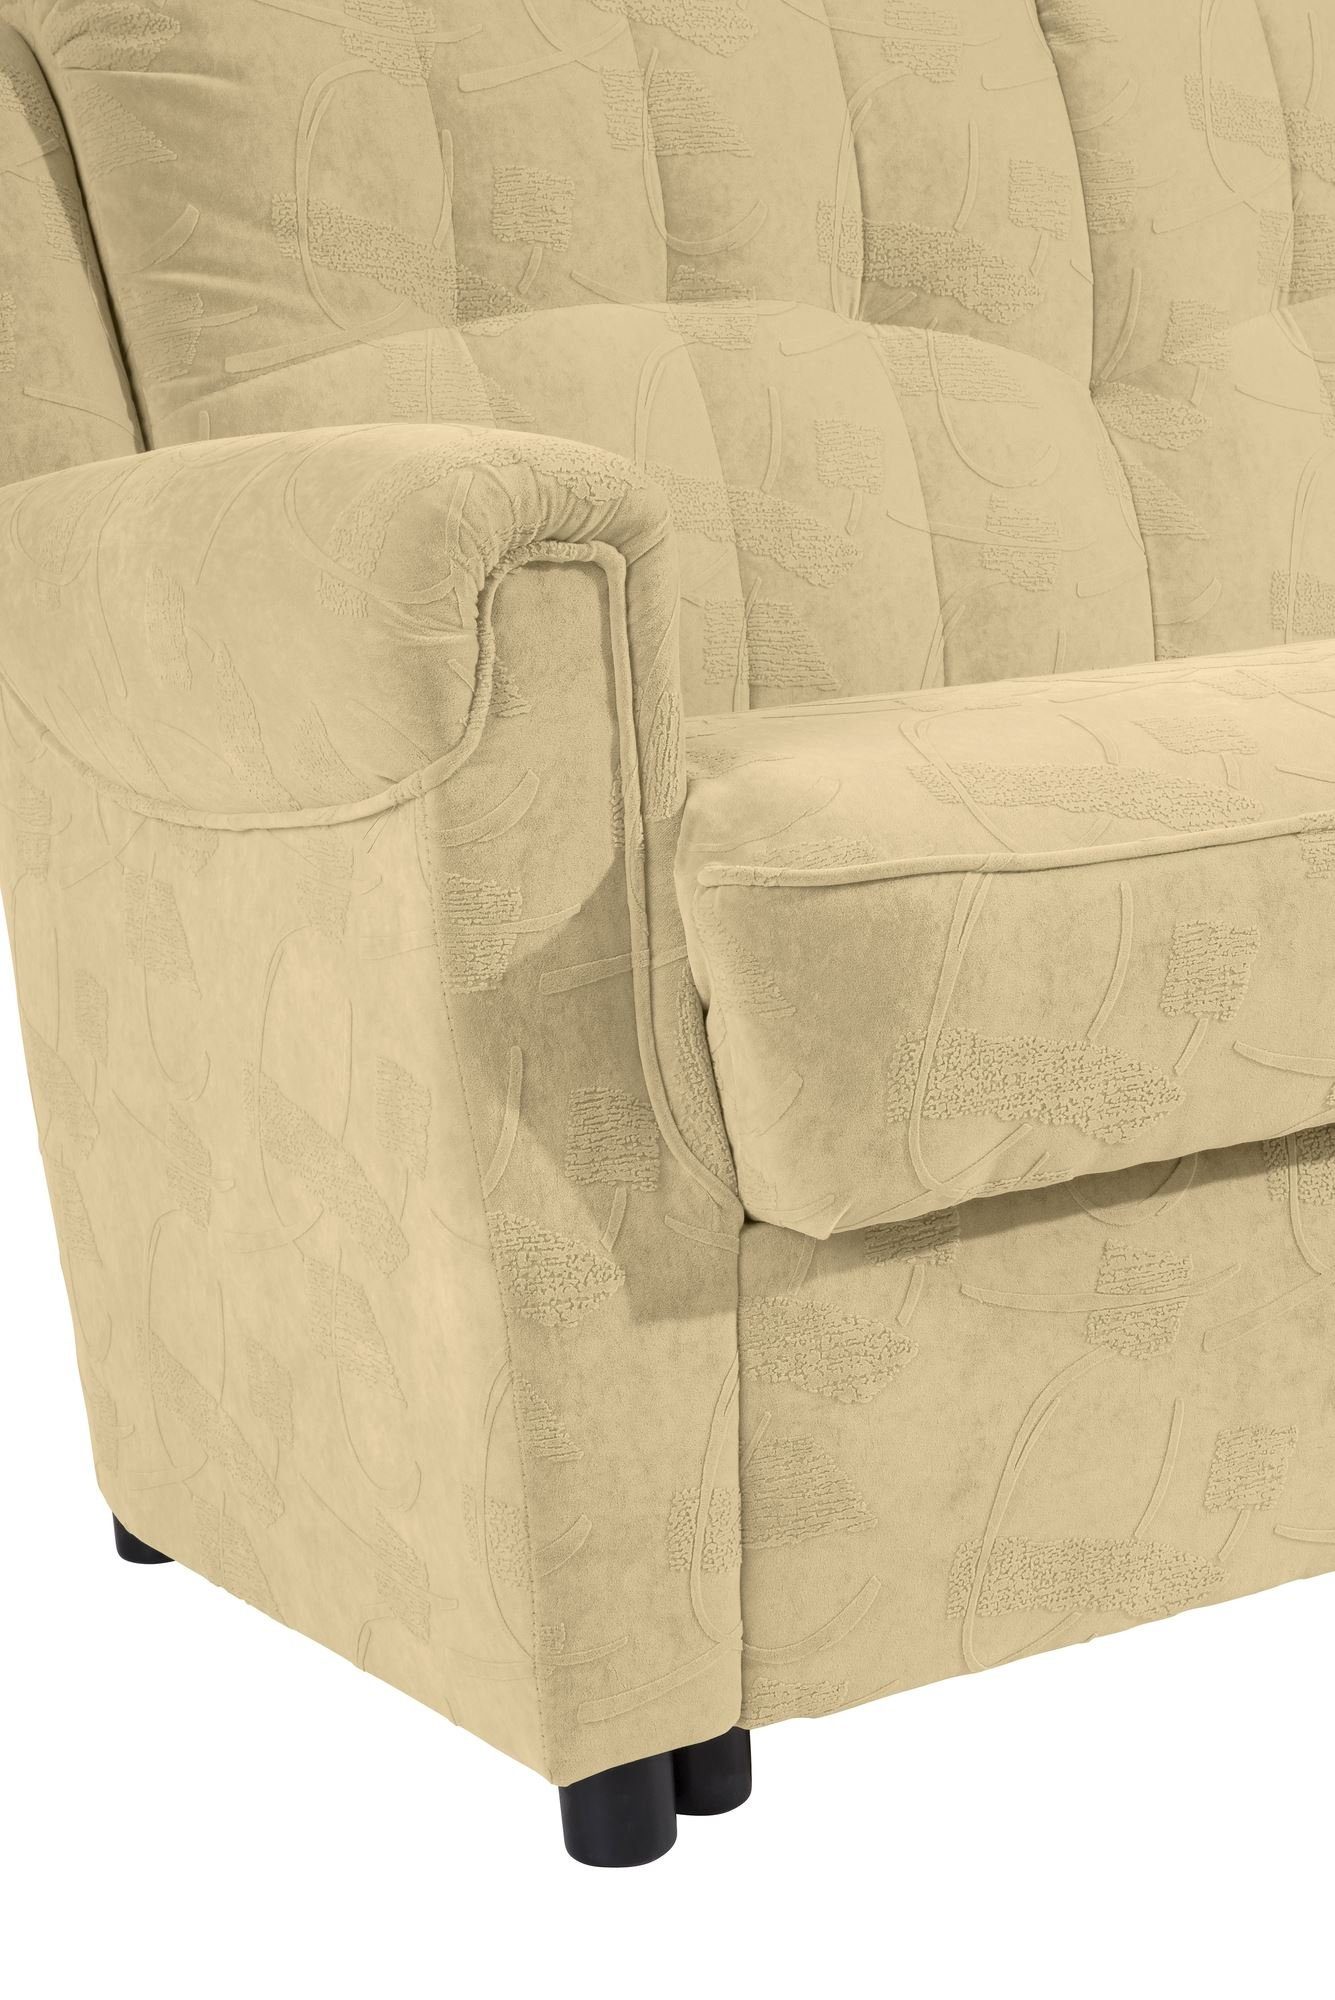 Versand Sparpreis Teile, 58 Bezug 1 Sitz 3-Sitzer Sofa Kessel aufm verarbeitet,bequemer Kostenlosem Bettfunktion mit inkl. Karuna Sofa hochwertig Microf,